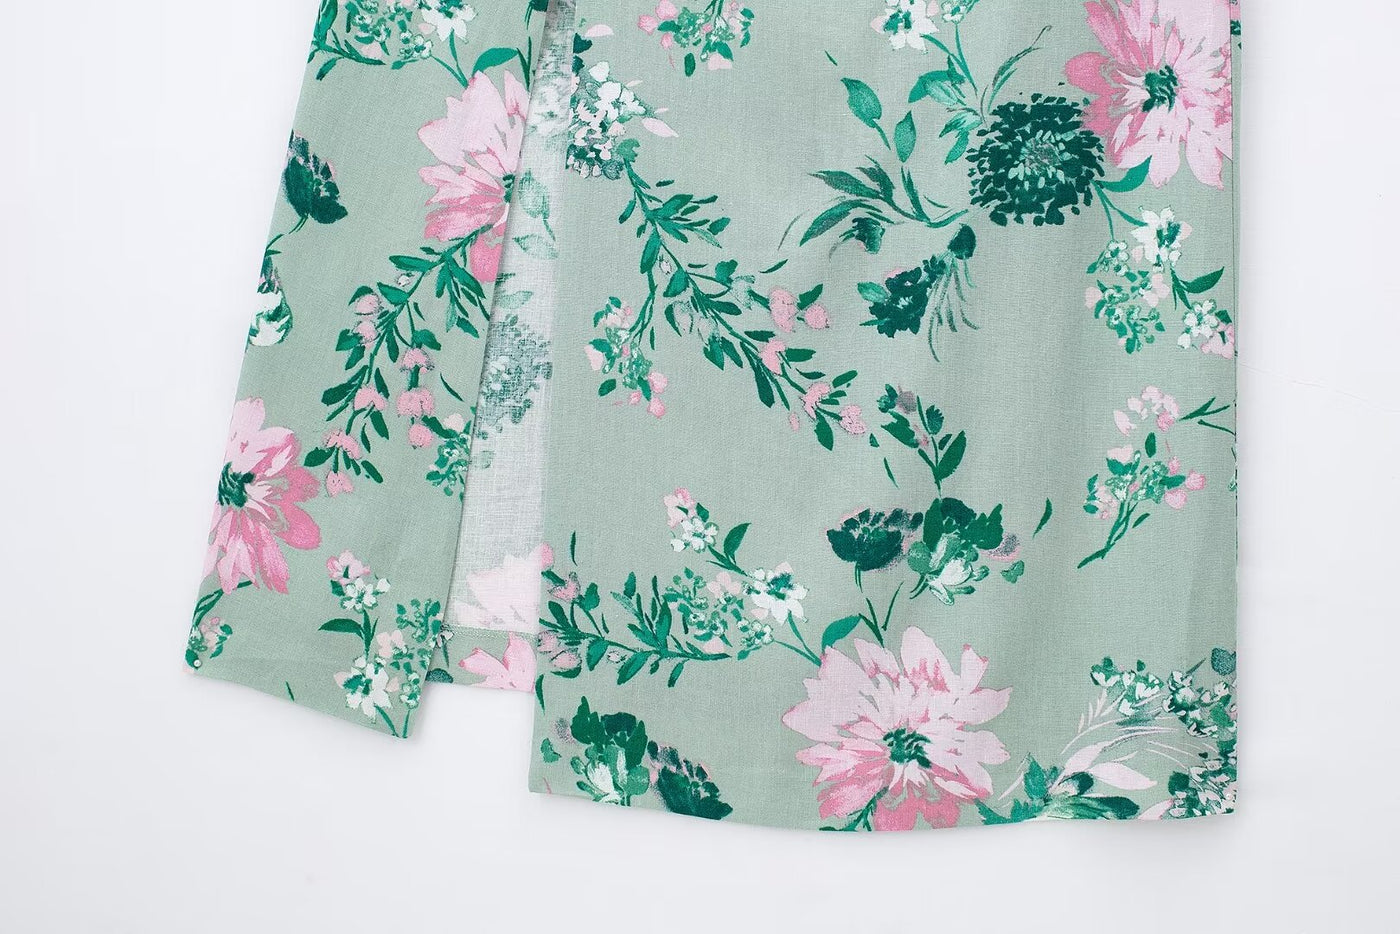 Mint Blossom Floral Slip Midi Dress